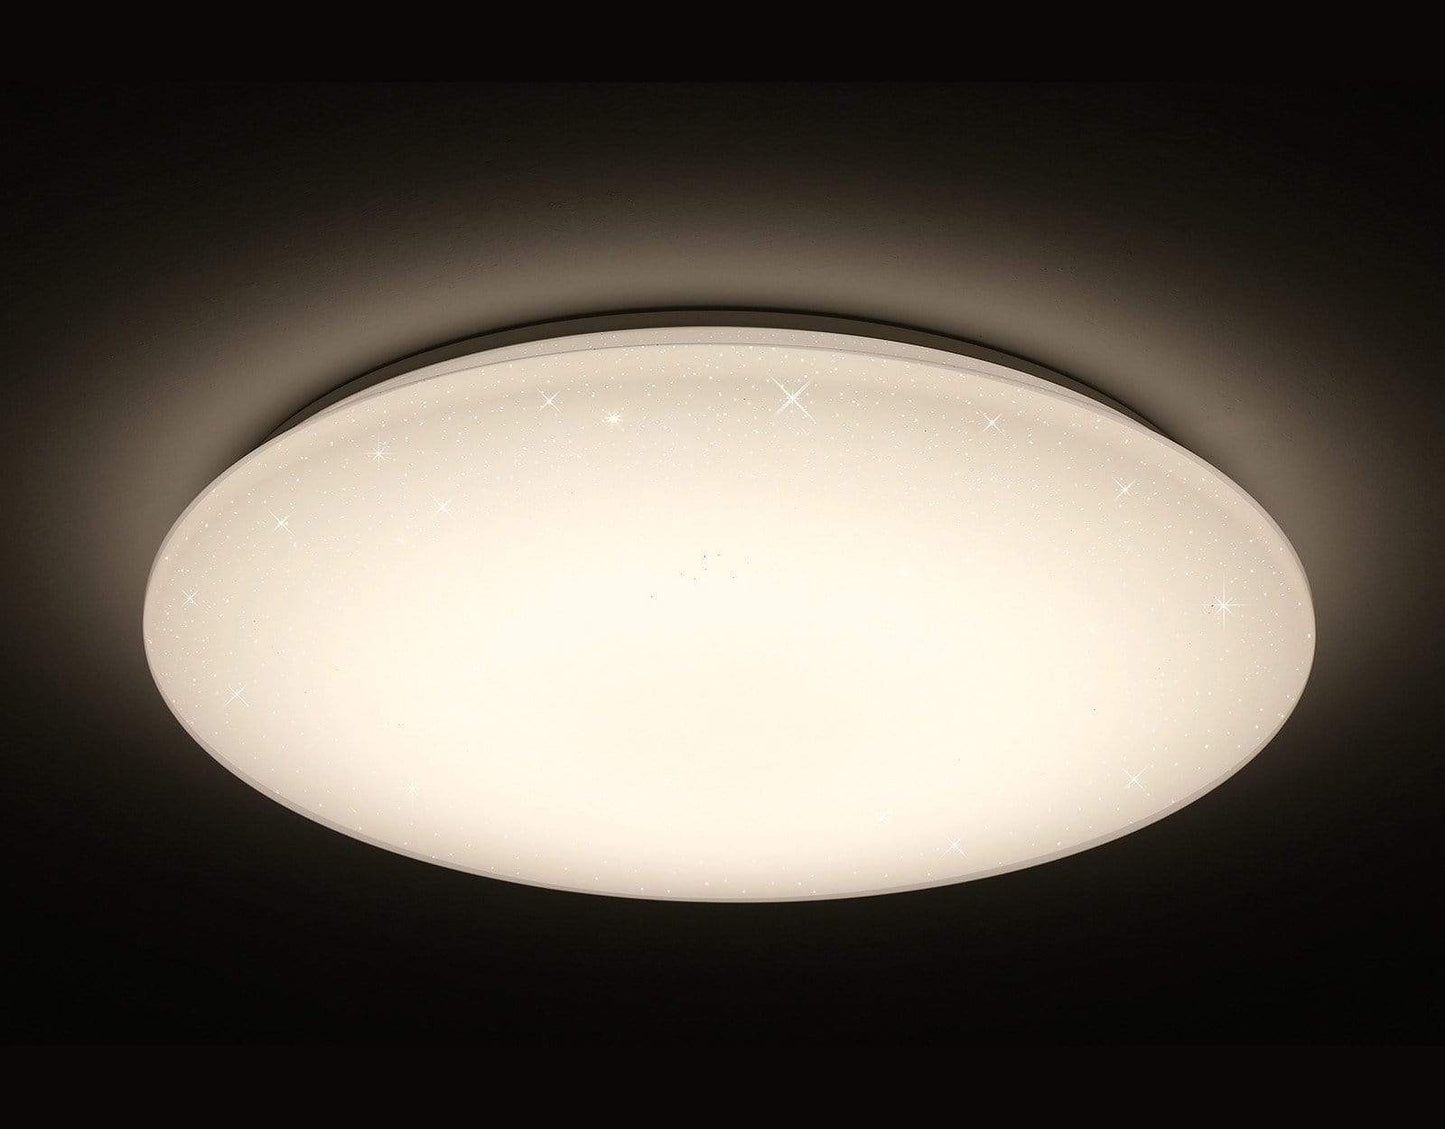 L6 Home Decore DALEN DL-C103X round led ceiling light